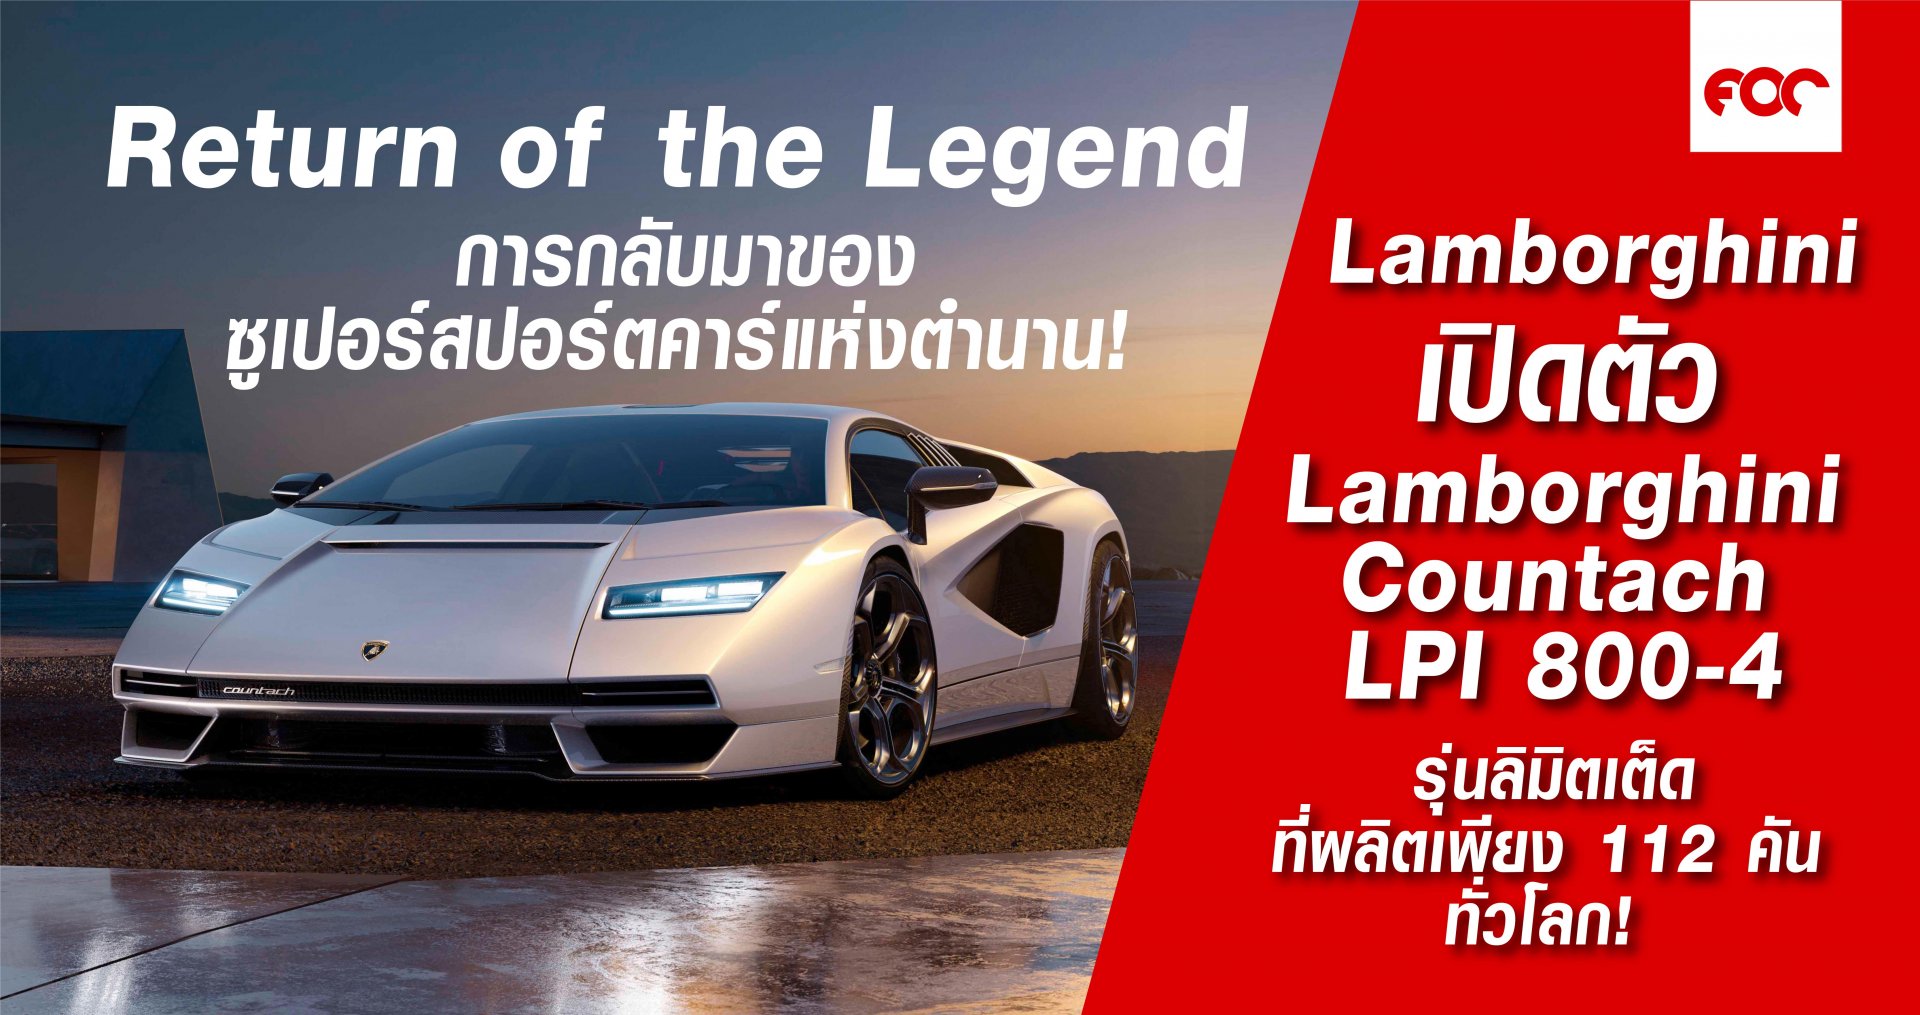 Lamborghini  Countach LPI 800-4  ผลิตเพียง 112 คัน ทั่วโลก!! 